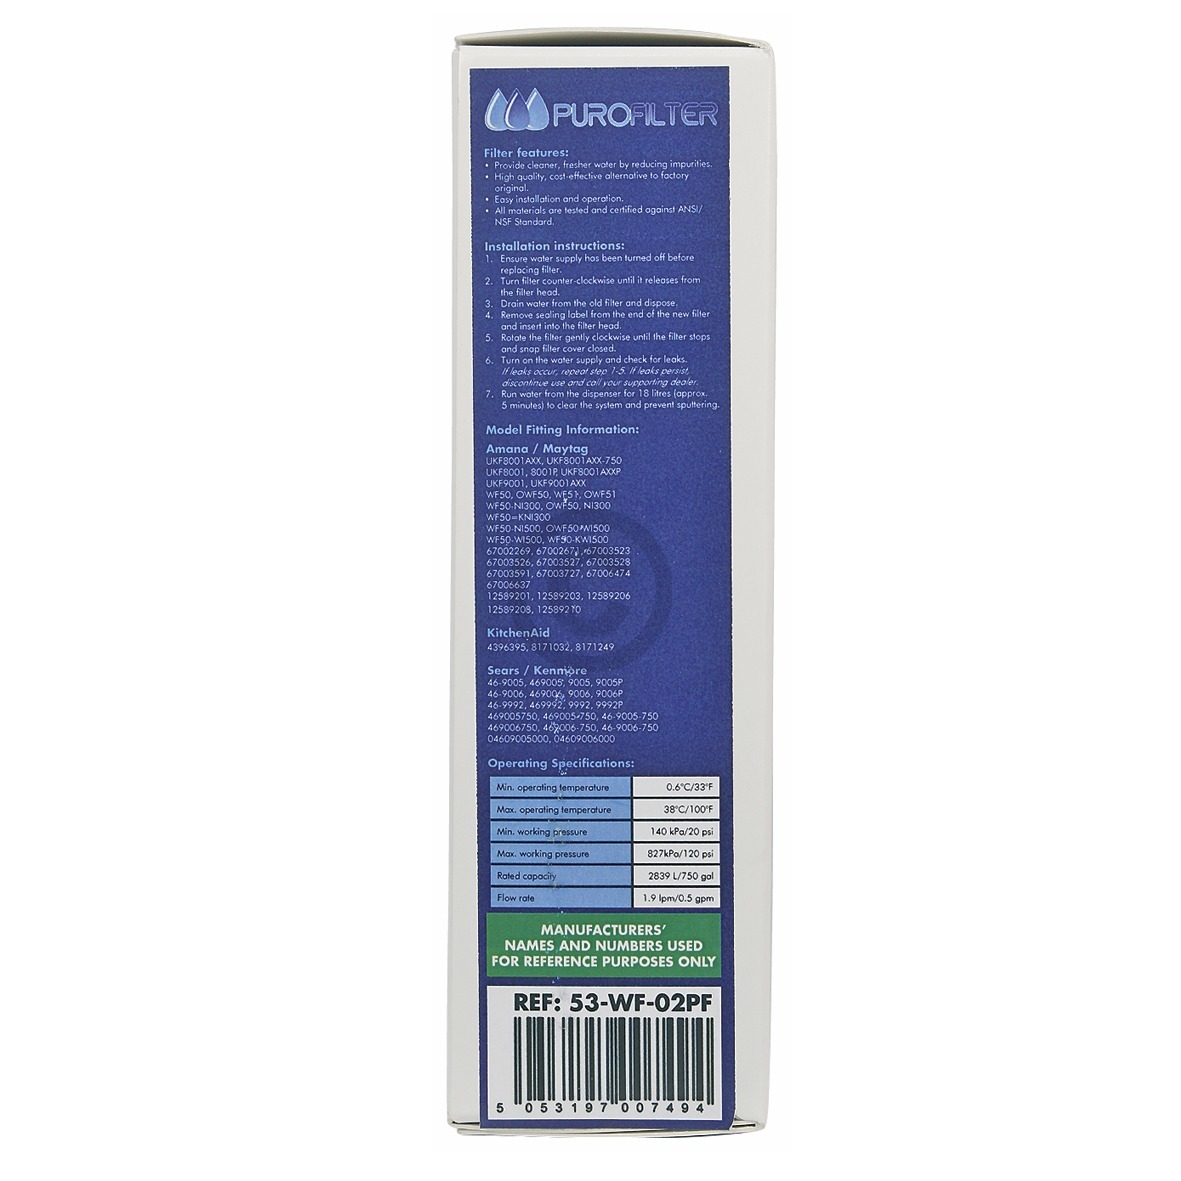 Wasserfilter wie Maytag UKF8001 für Kühlschrank SideBySide